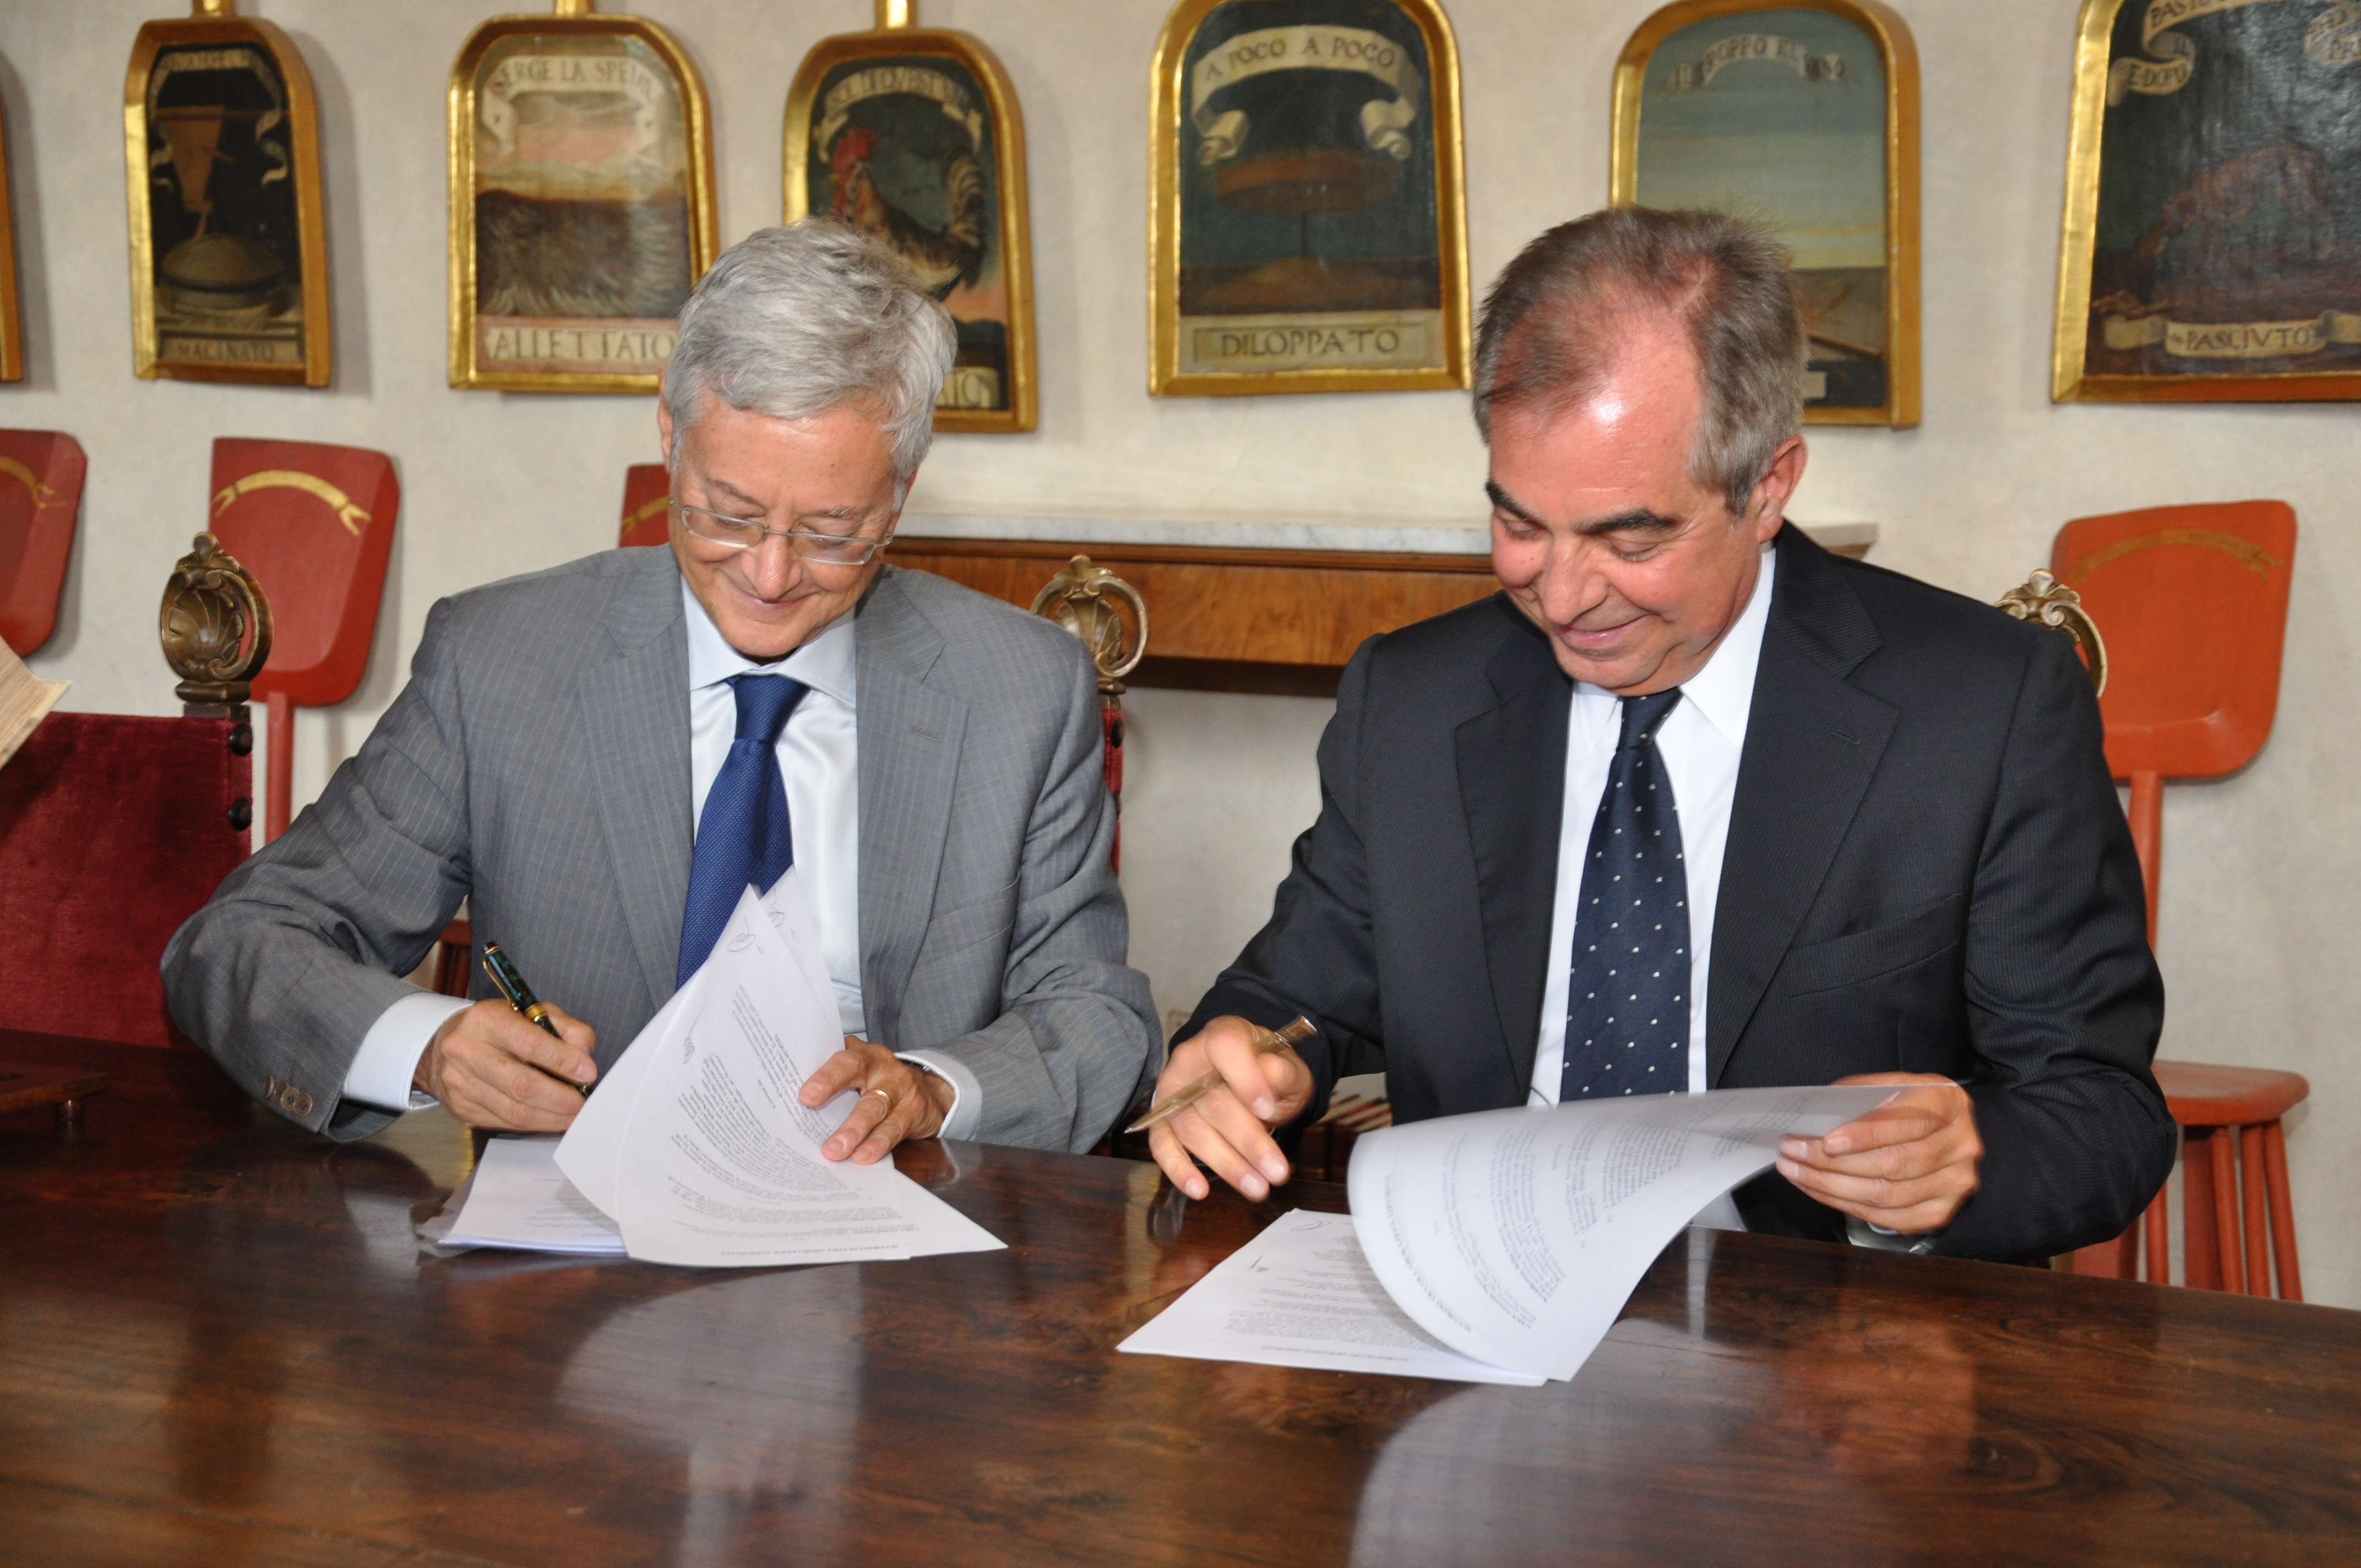 Claudio Marazzini e Marco Castelluzzo firmano l'accordo Crusca - UTET